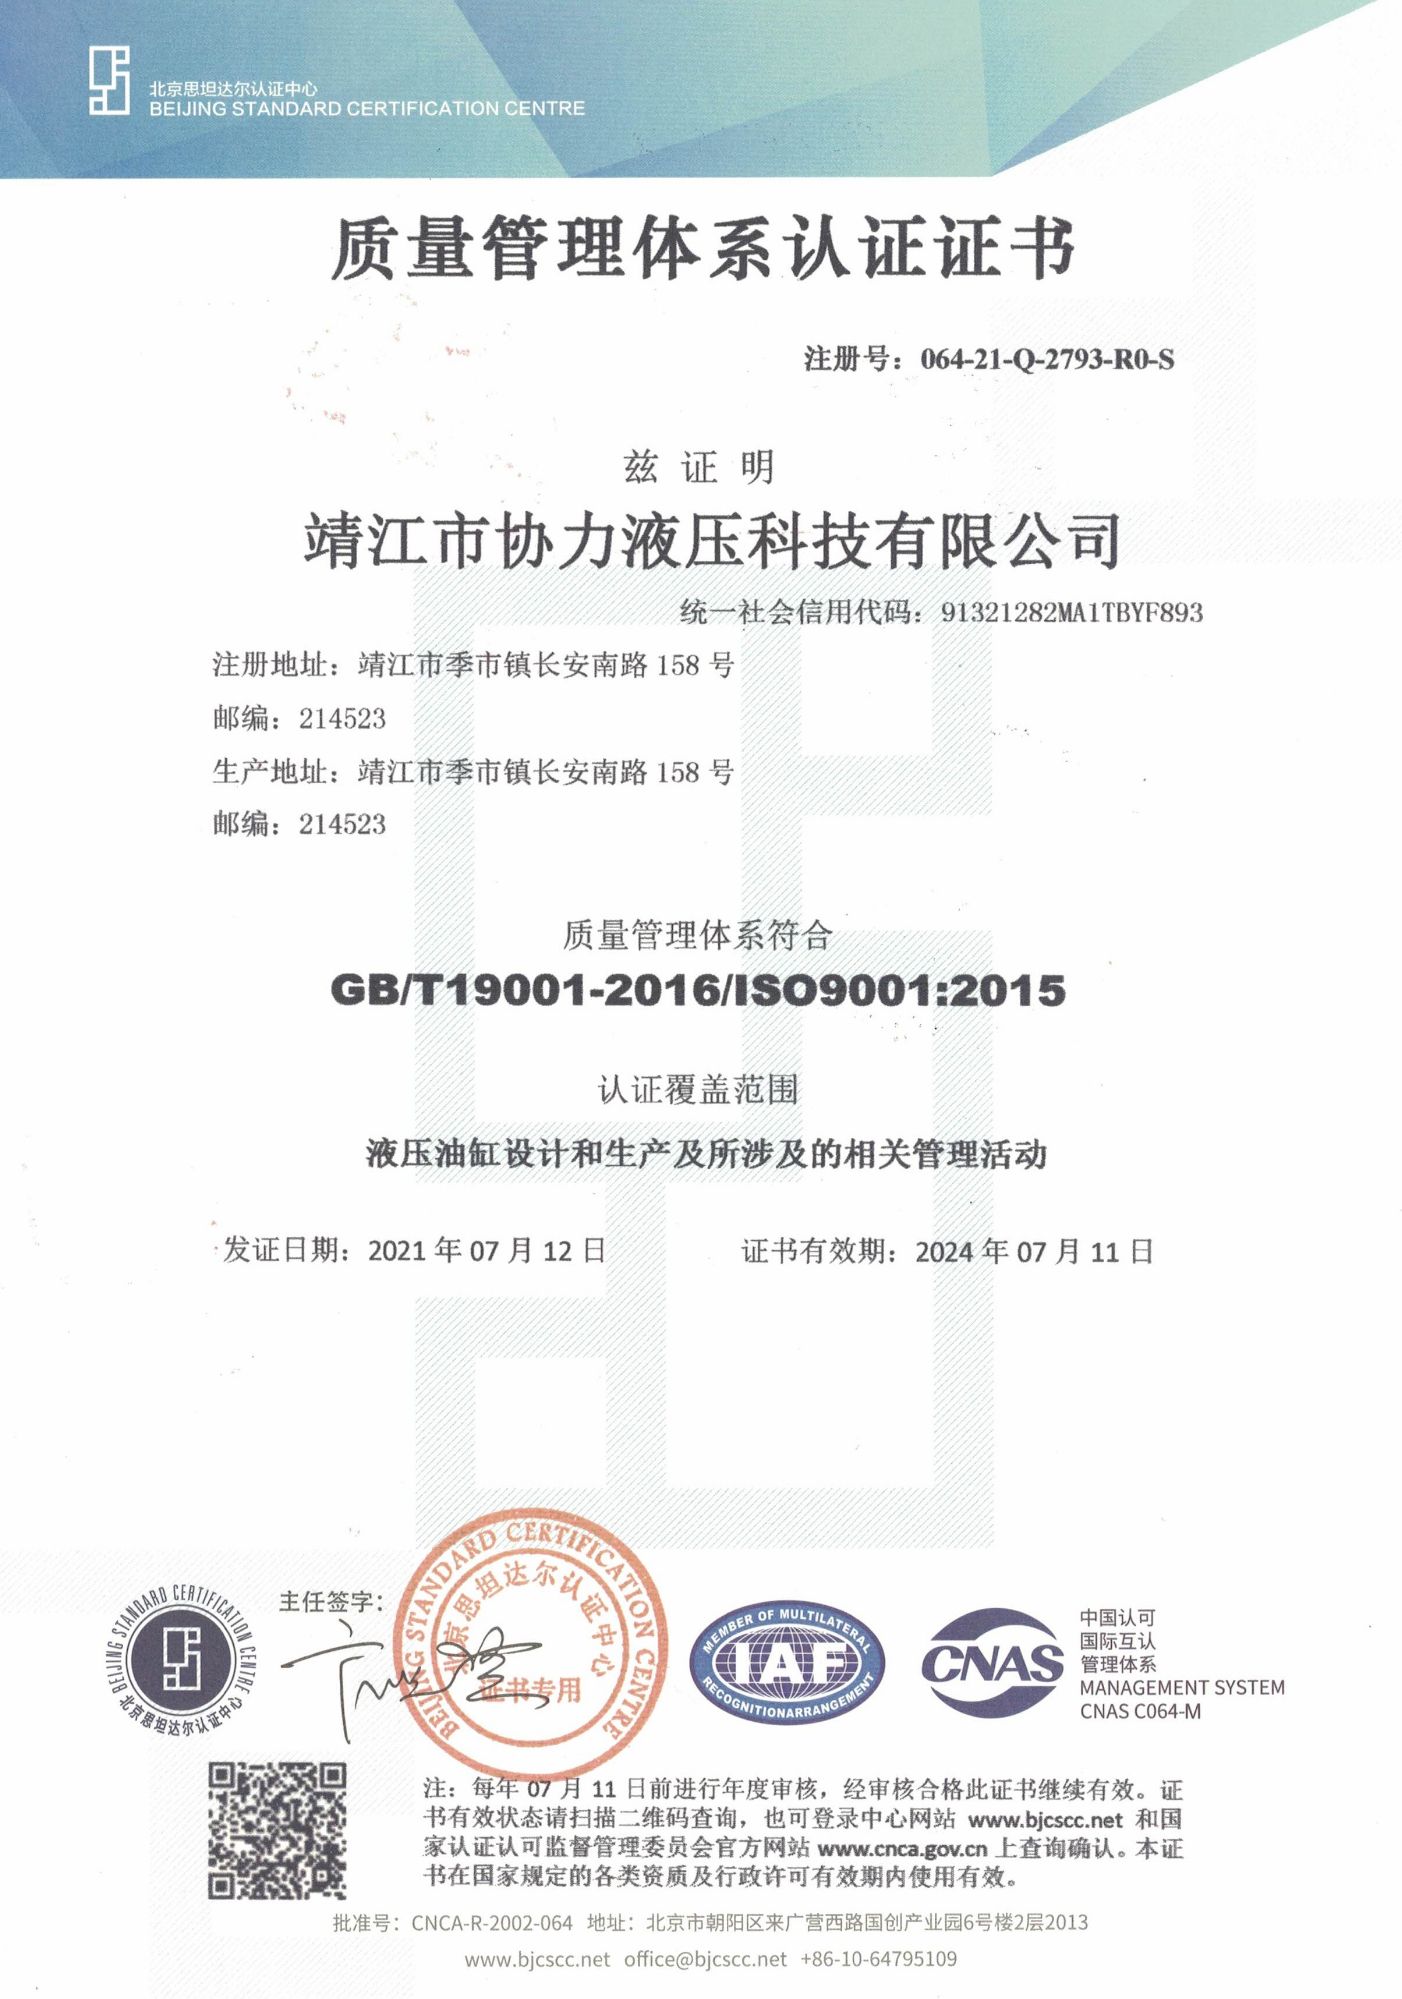 恭贺我司顺利通过ISO9001质量管理体系认证